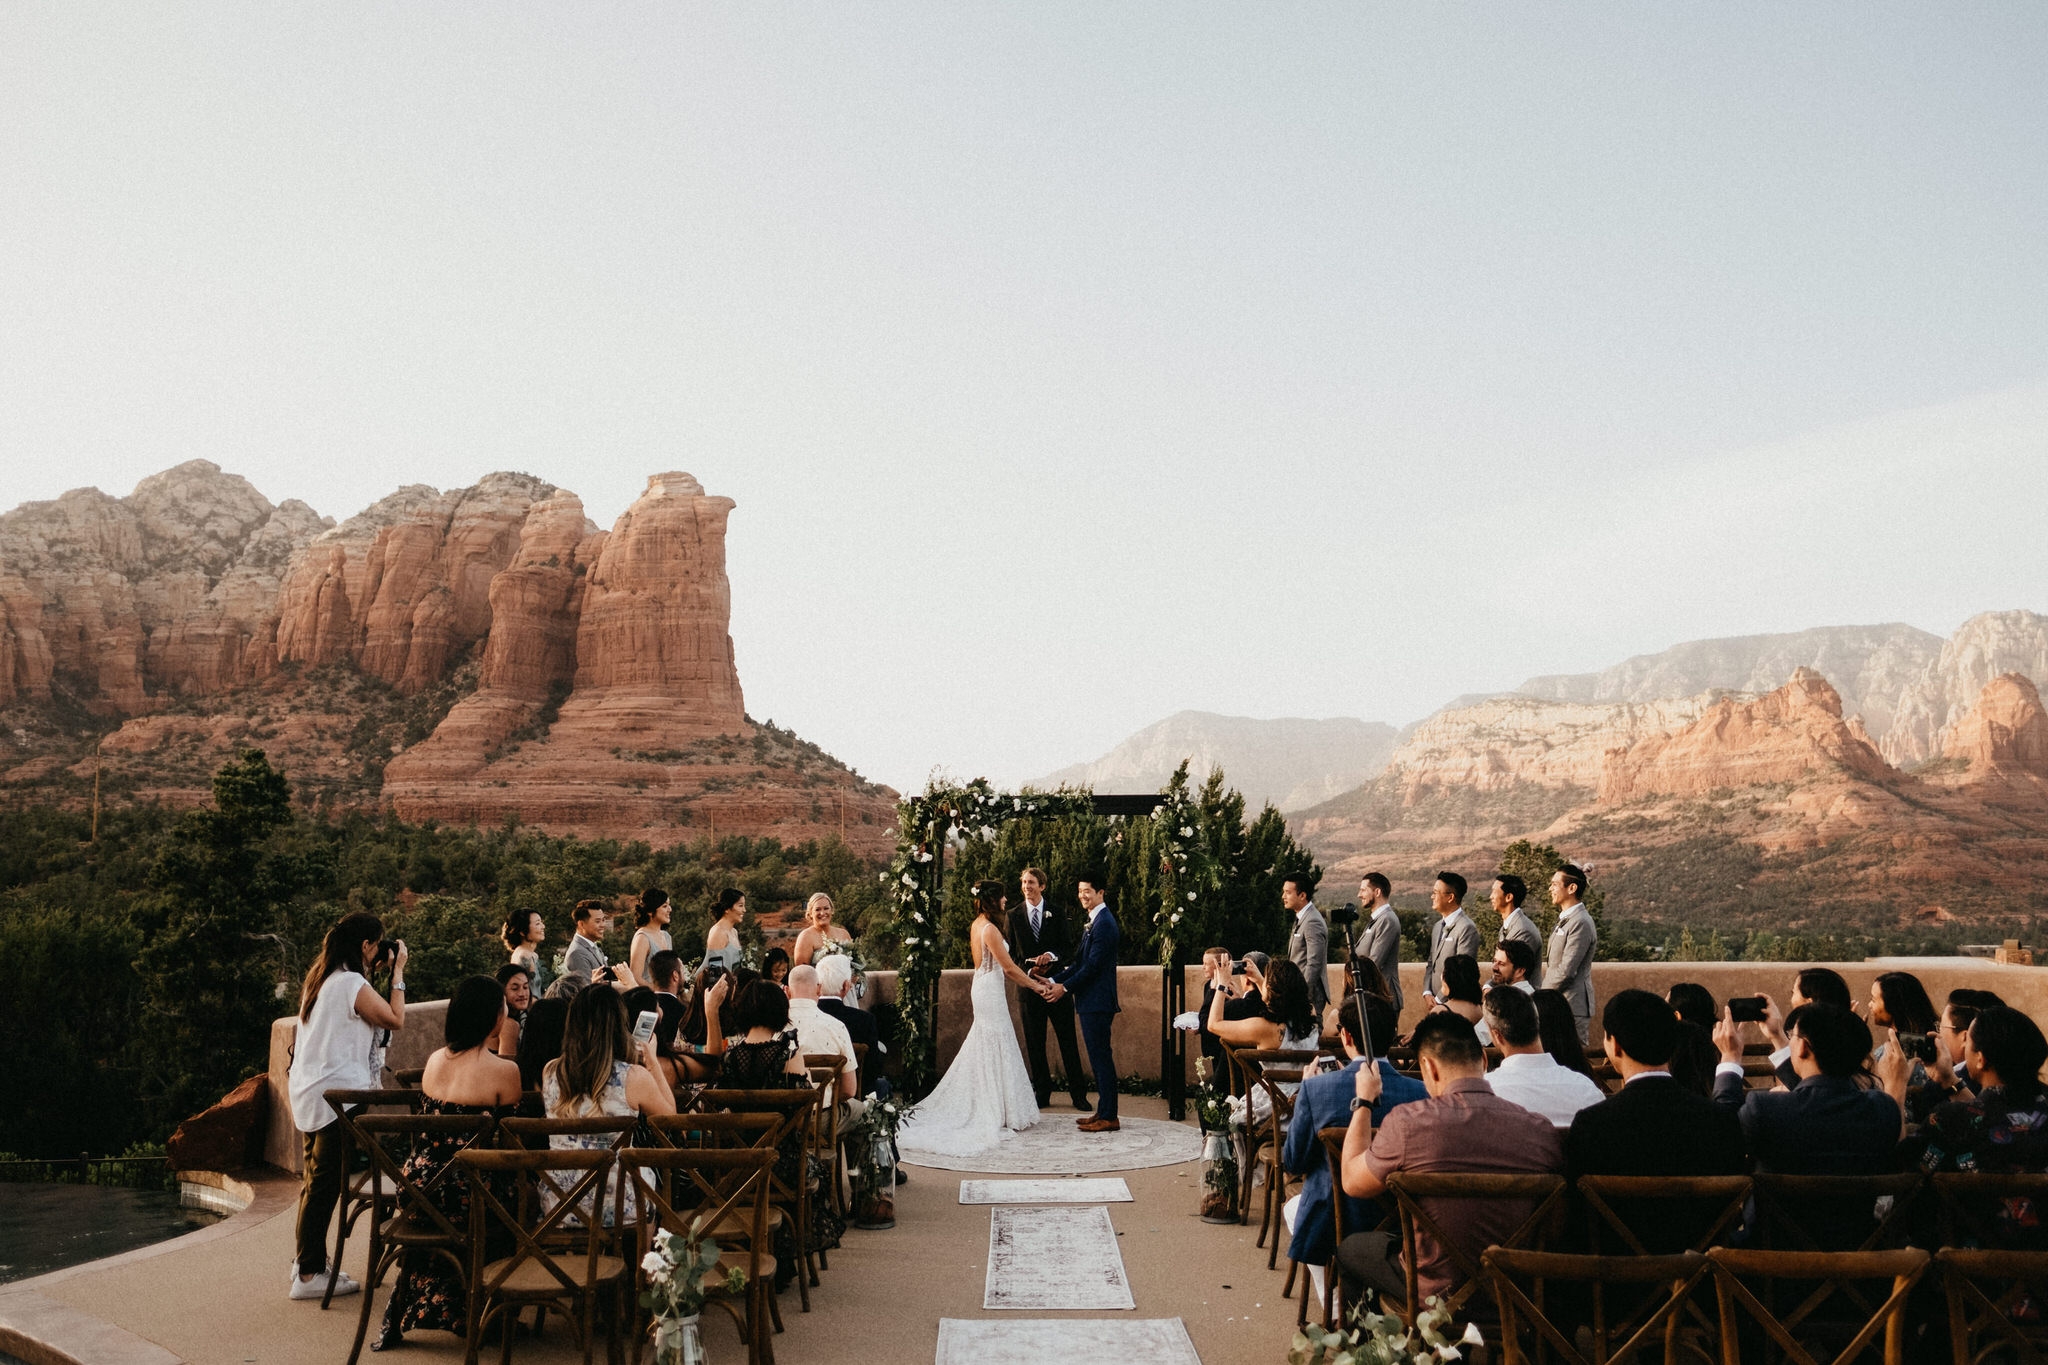 Ceremony - Wedding in Arizona, Sedona